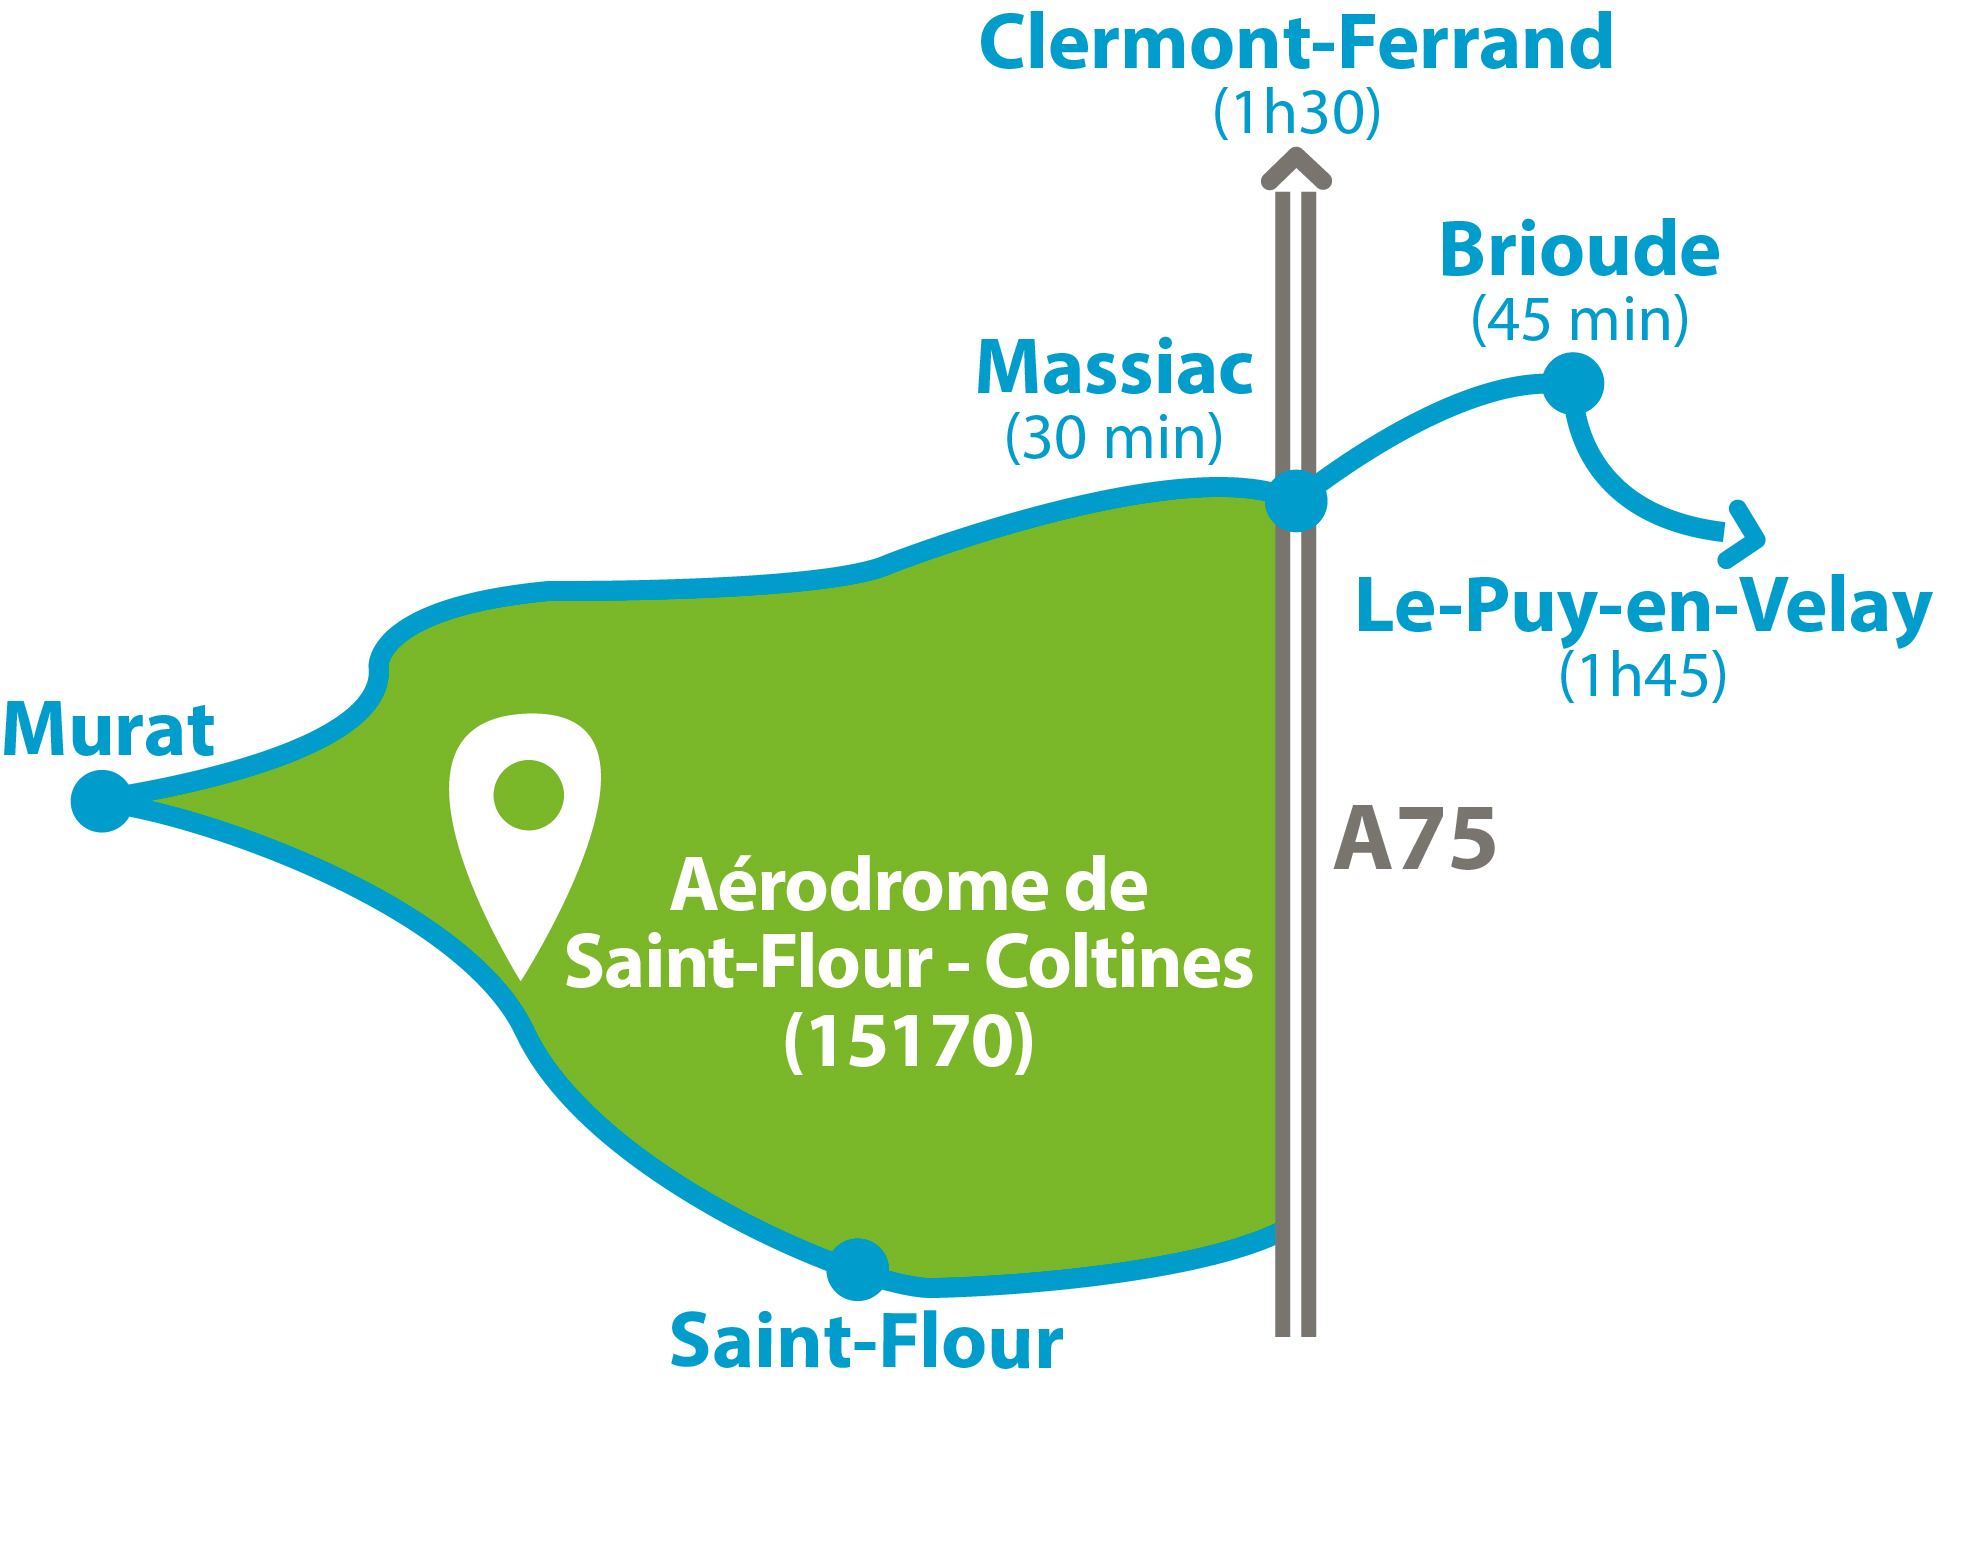 Contact - Aérodrome de Saint-Flour/Coltines (15170)